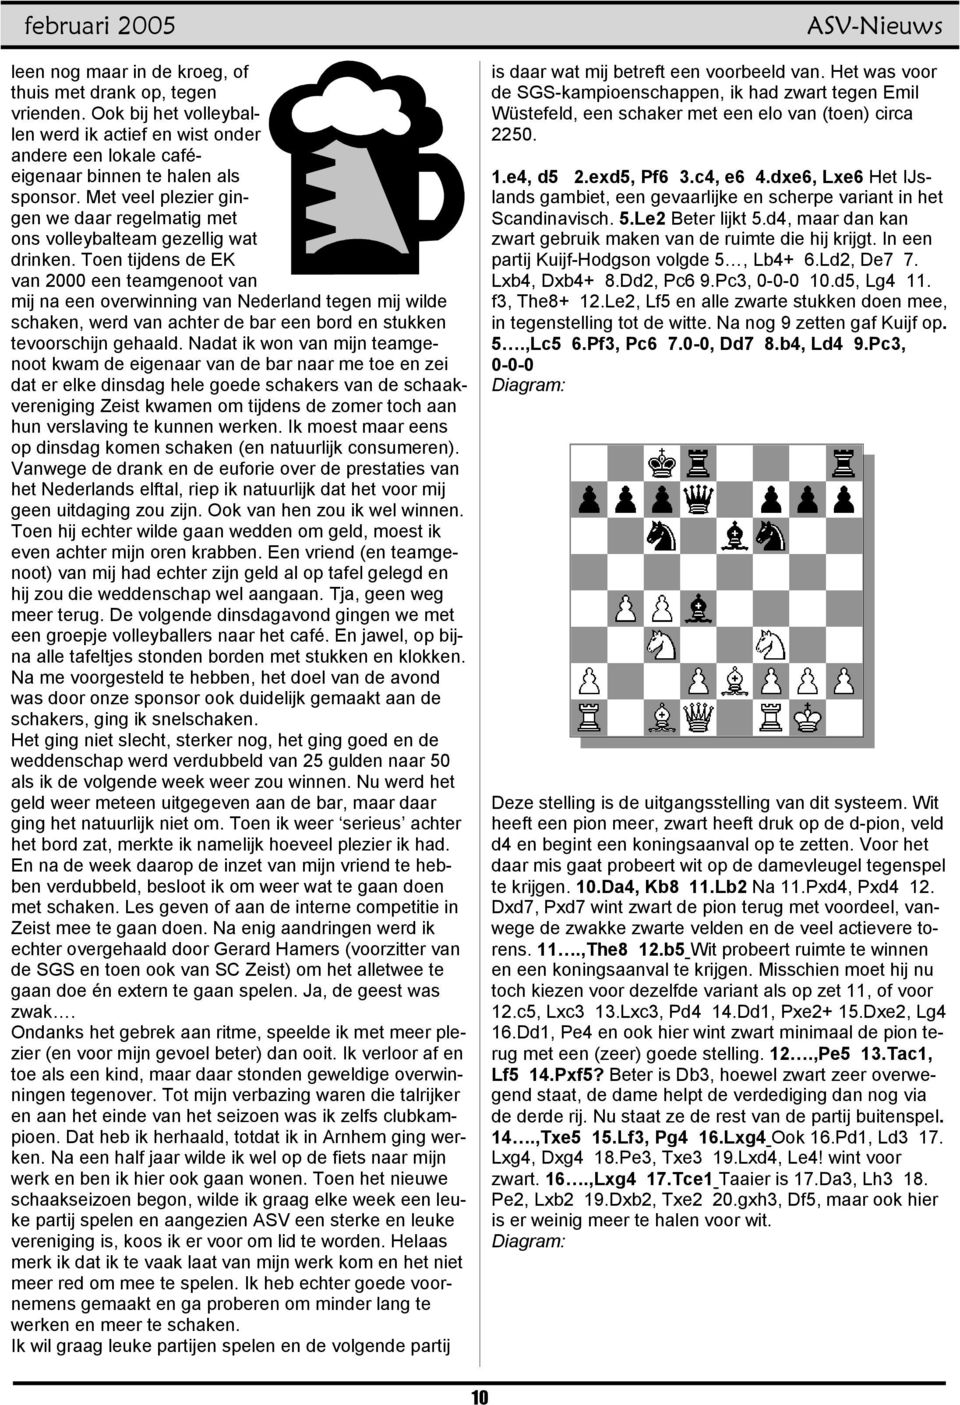 Toen tijdens de EK van 2000 een teamgenoot van mij na een overwinning van Nederland tegen mij wilde schaken, werd van achter de bar een bord en stukken tevoorschijn gehaald.